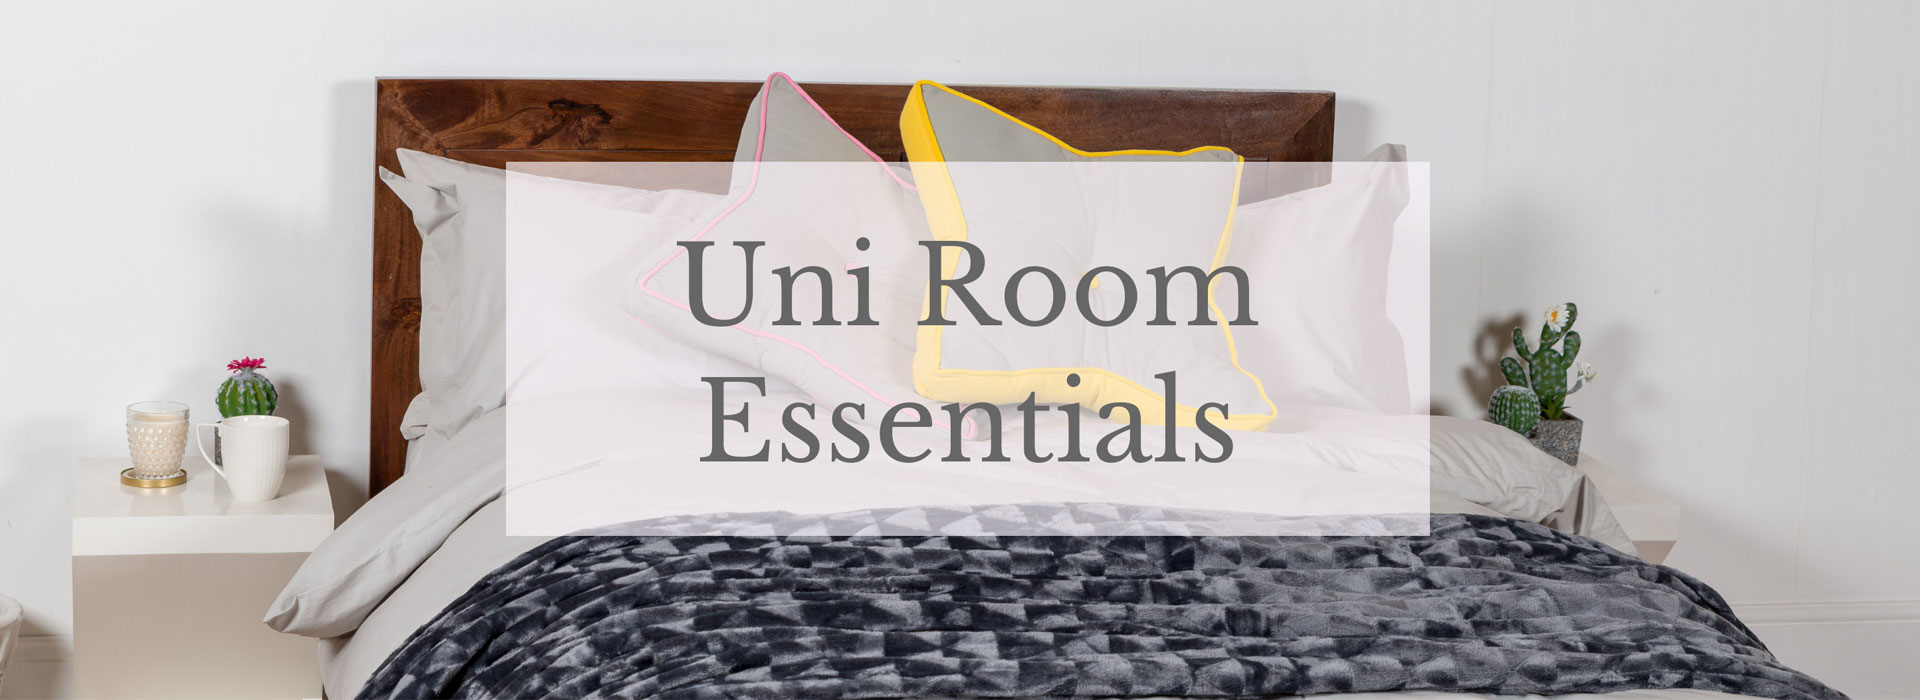 uni room essentials